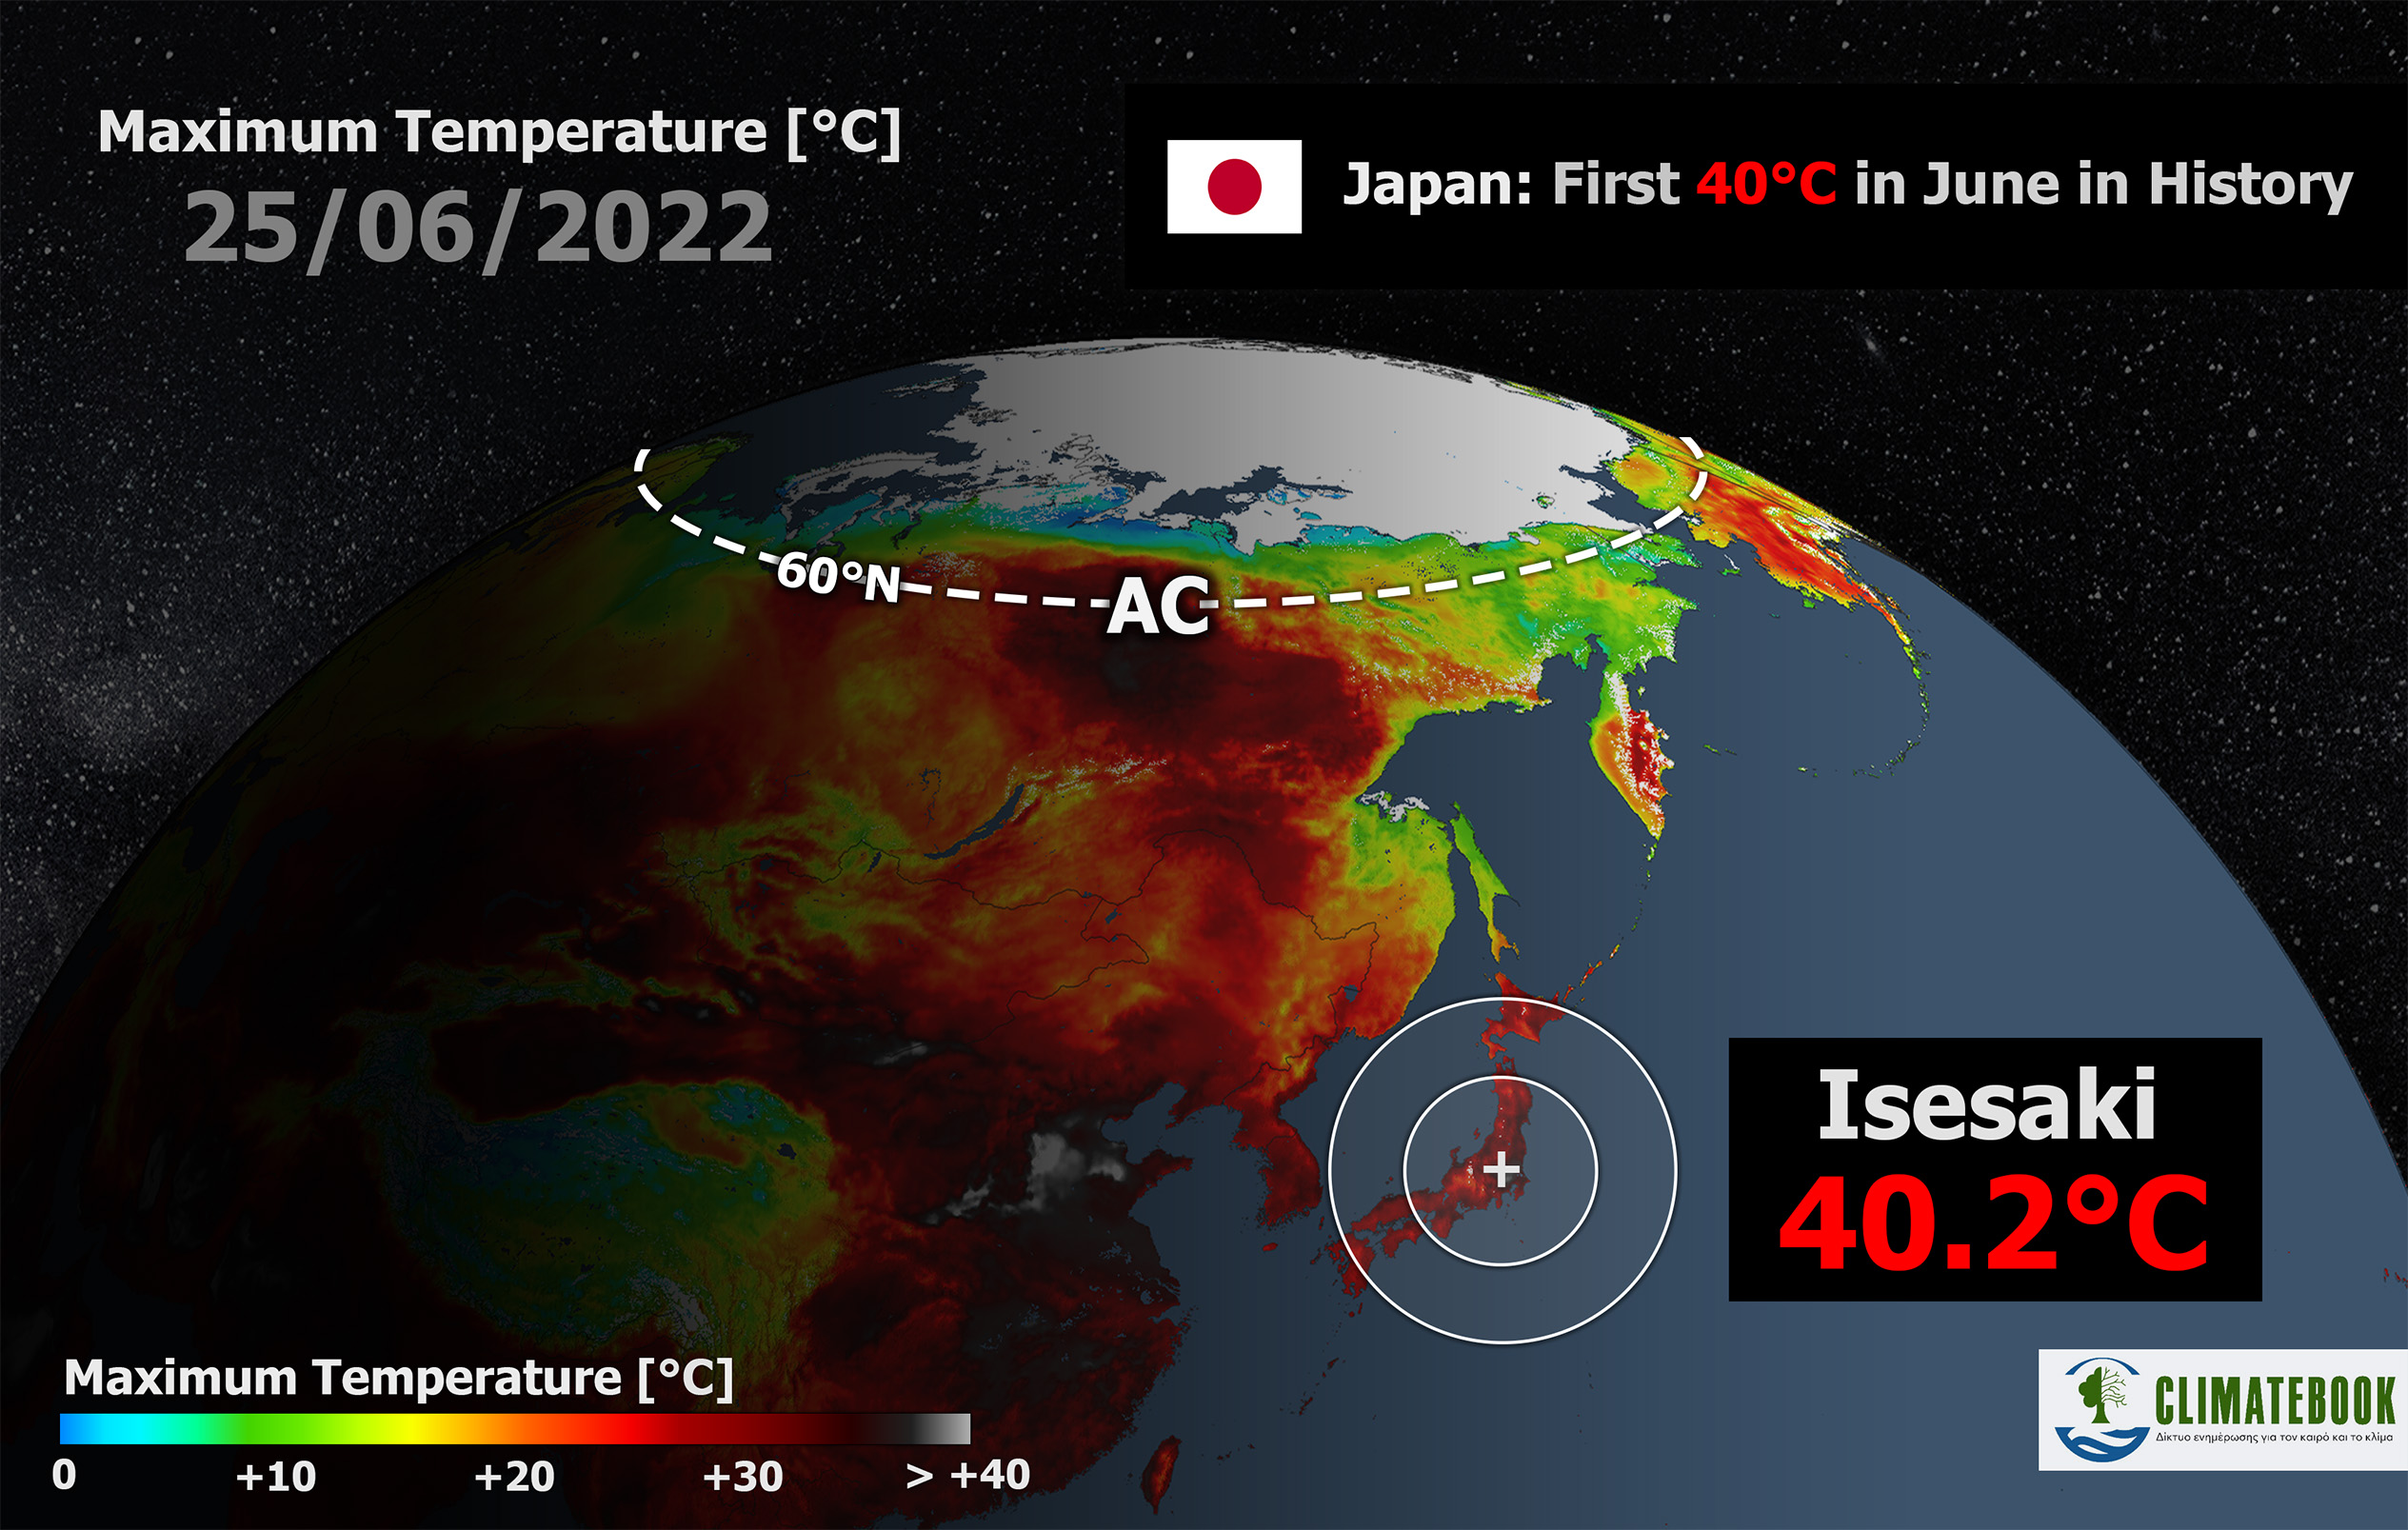 Ιαπωνία: Ρεκόρ θερμοκρασίας για το μήνα Ιούνιο – Η πρώτη καταγεγραμμένη τιμή 40°C για τον Ιούνιο στα χρονικά